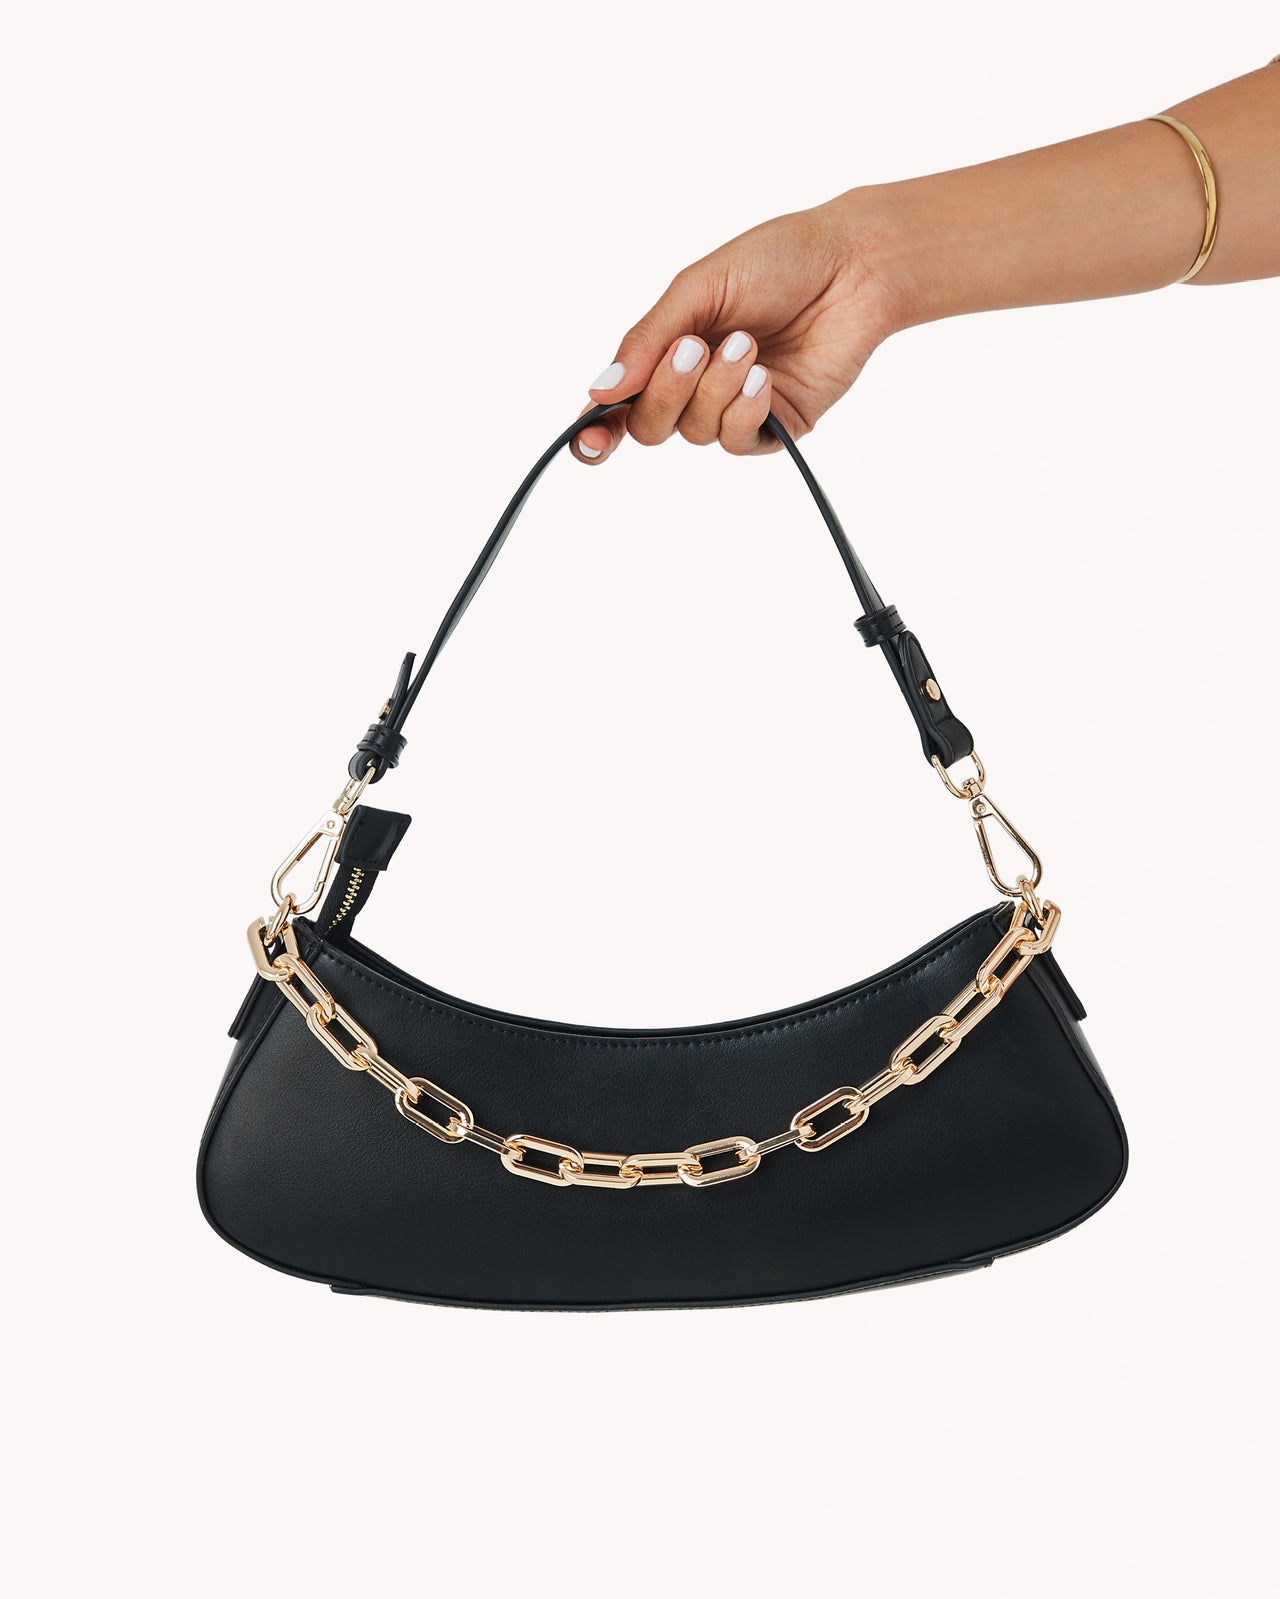 Maple Chain Black Shoulder Bag, Evening Bag by Billini | LIT Boutique